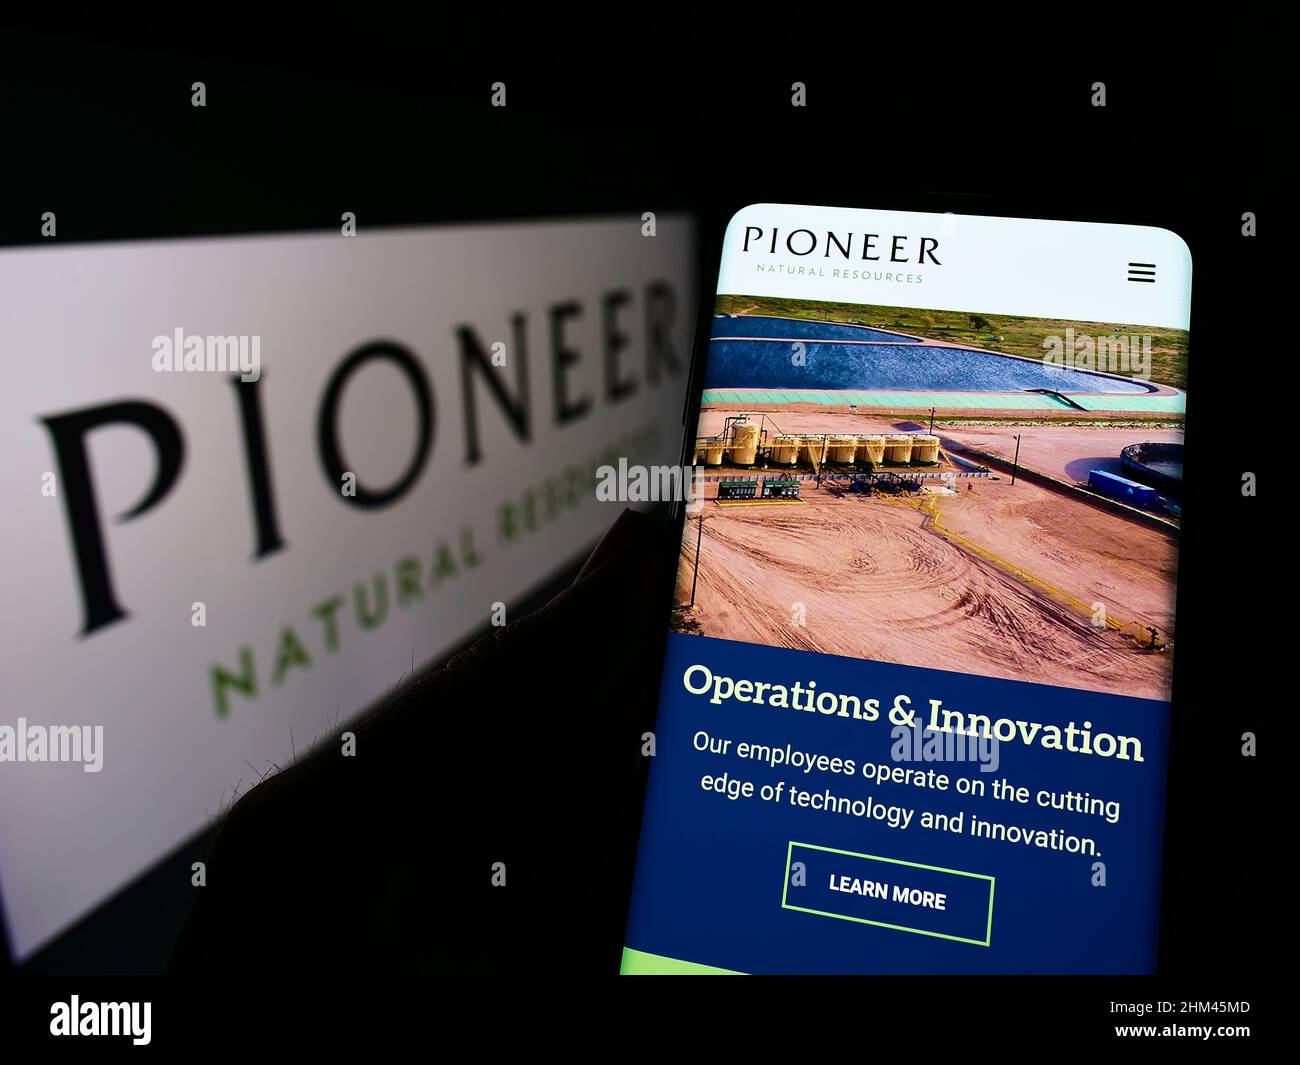 Persona che tiene lo smartphone con la pagina web del business statunitense Pioneer Natural Resources Company sullo schermo con il logo. Concentrarsi sul centro del display del telefono. Foto Stock